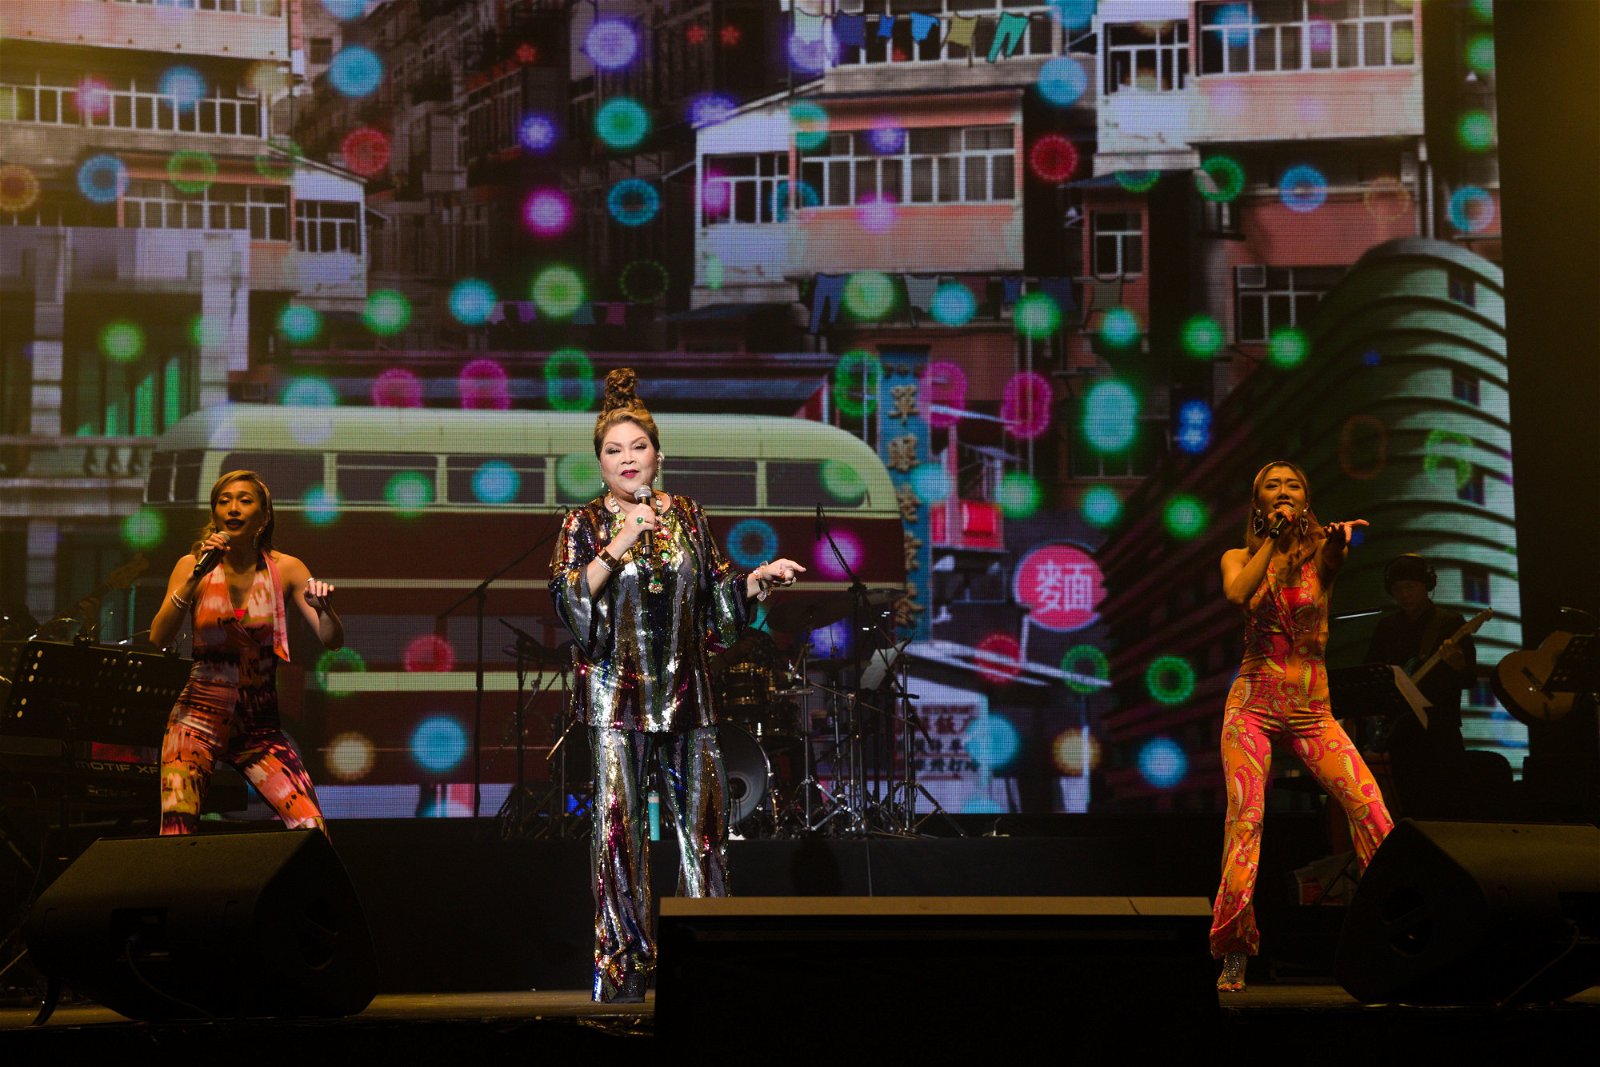 玛俐亚在台上又唱又跳，还带动观众与她一起跳，让现场气氛嗨翻天。